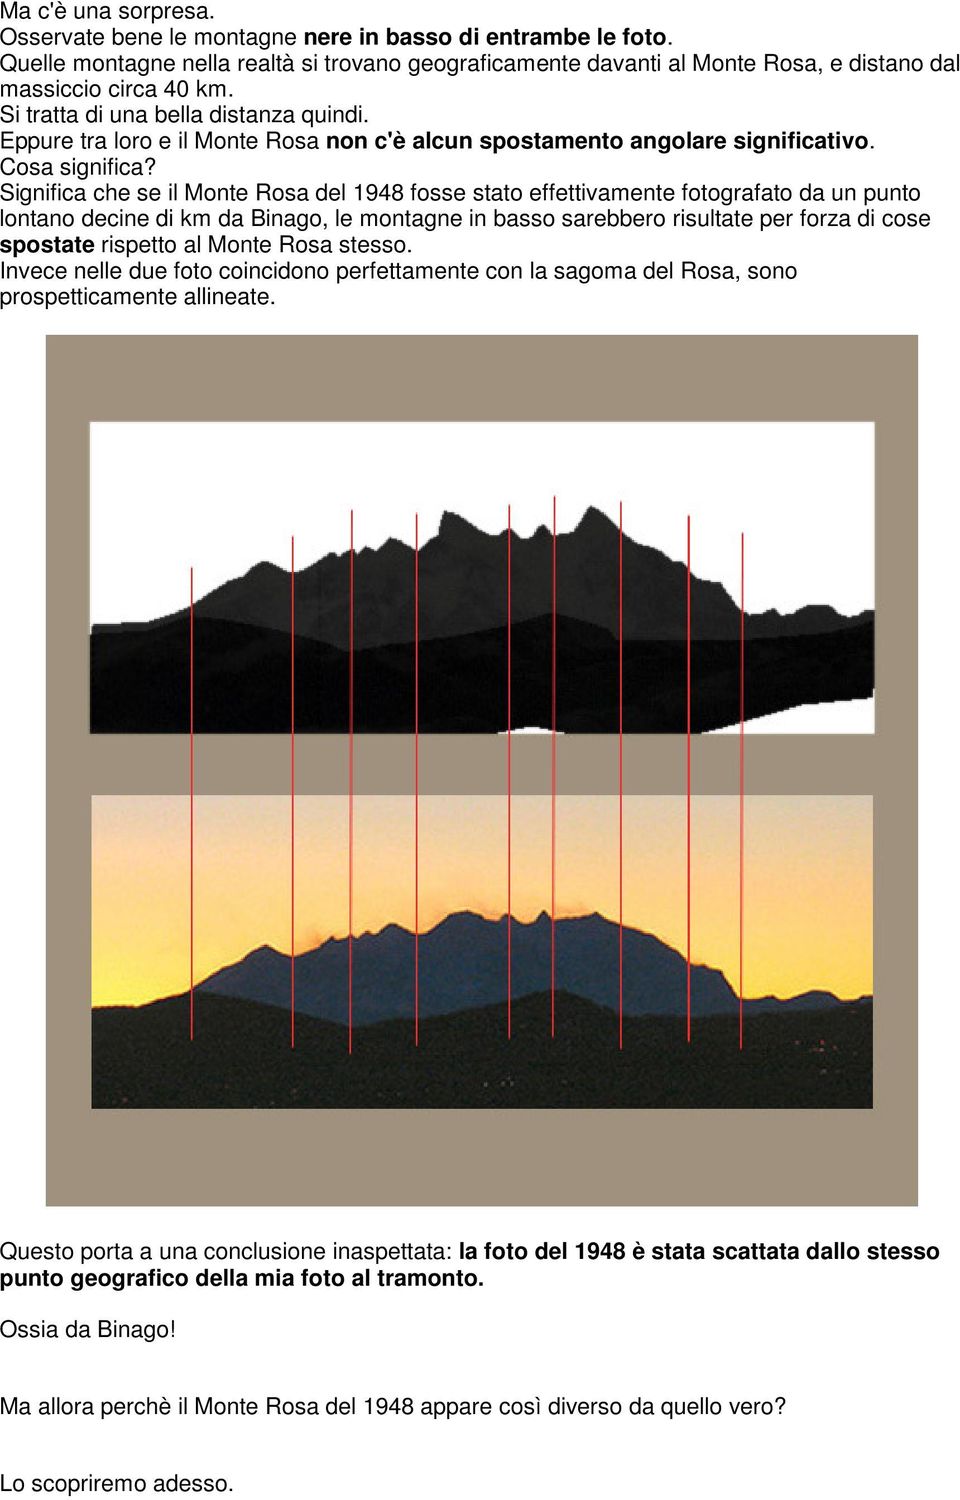 Significa che se il Monte Rosa del 1948 fosse stato effettivamente fotografato da un punto lontano decine di km da Binago, le montagne in basso sarebbero risultate per forza di cose spostate rispetto